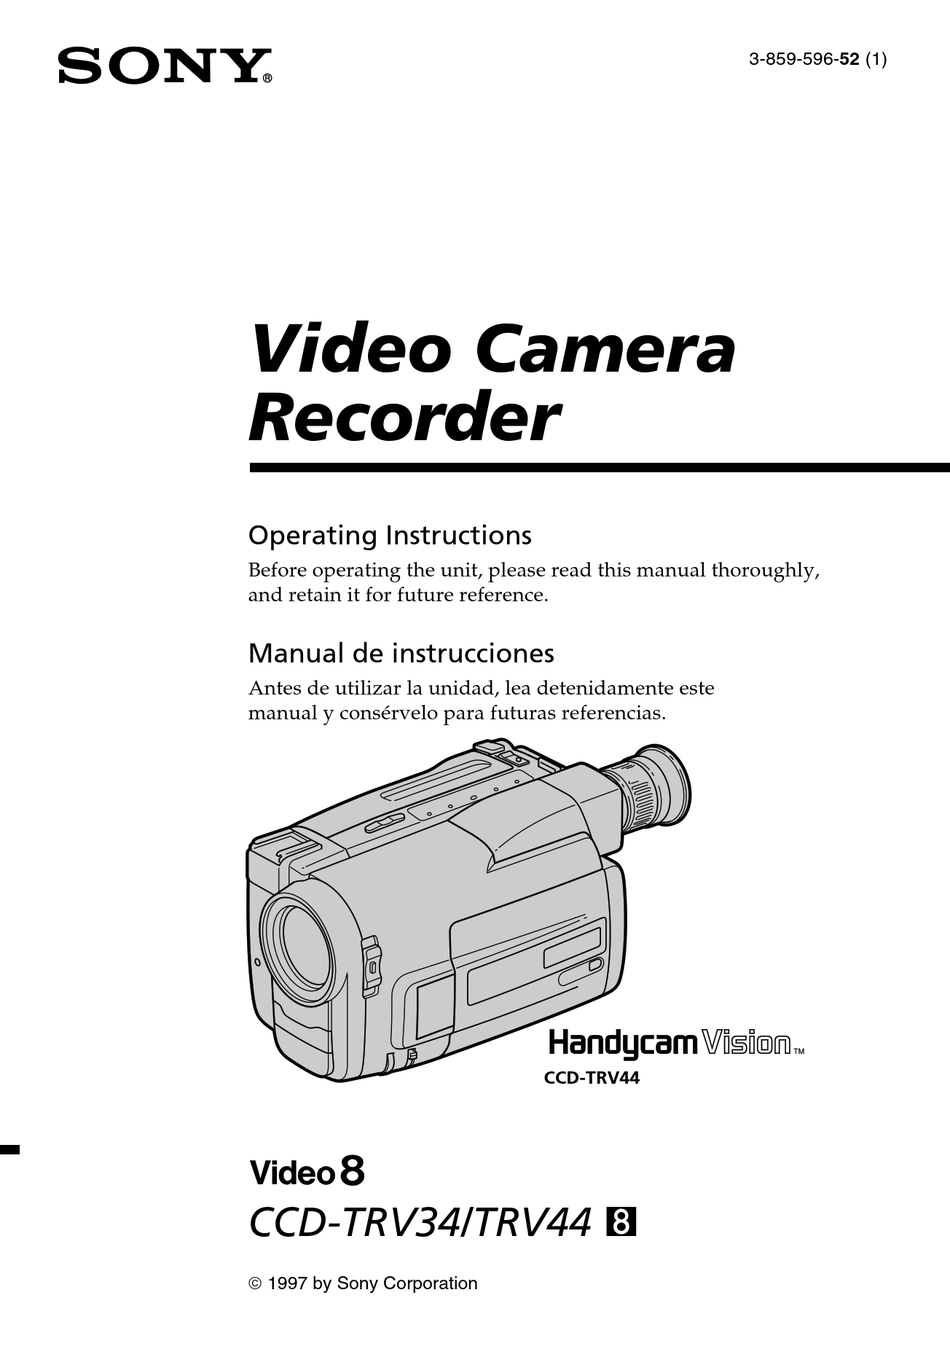 Sony videocámara-Sony handycam hi8-video 8/digital 8 para la selección 